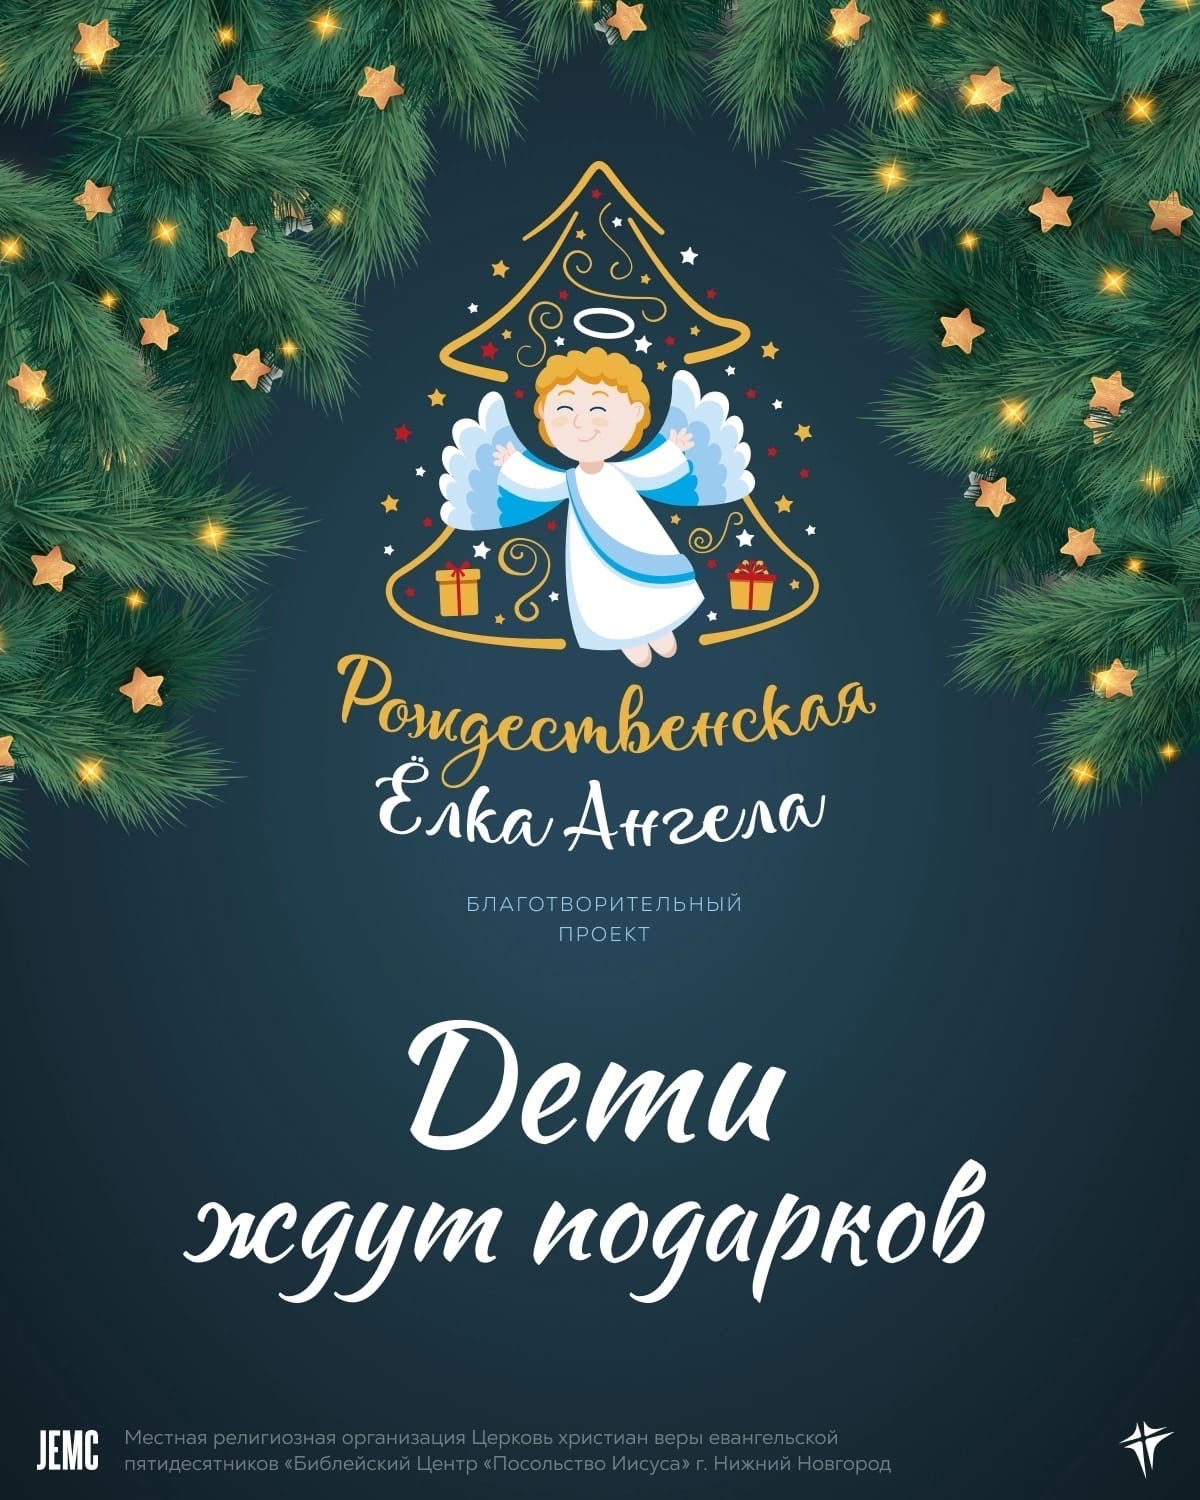 Благотворительные Рождественские проекты стартовали в разных уголках России